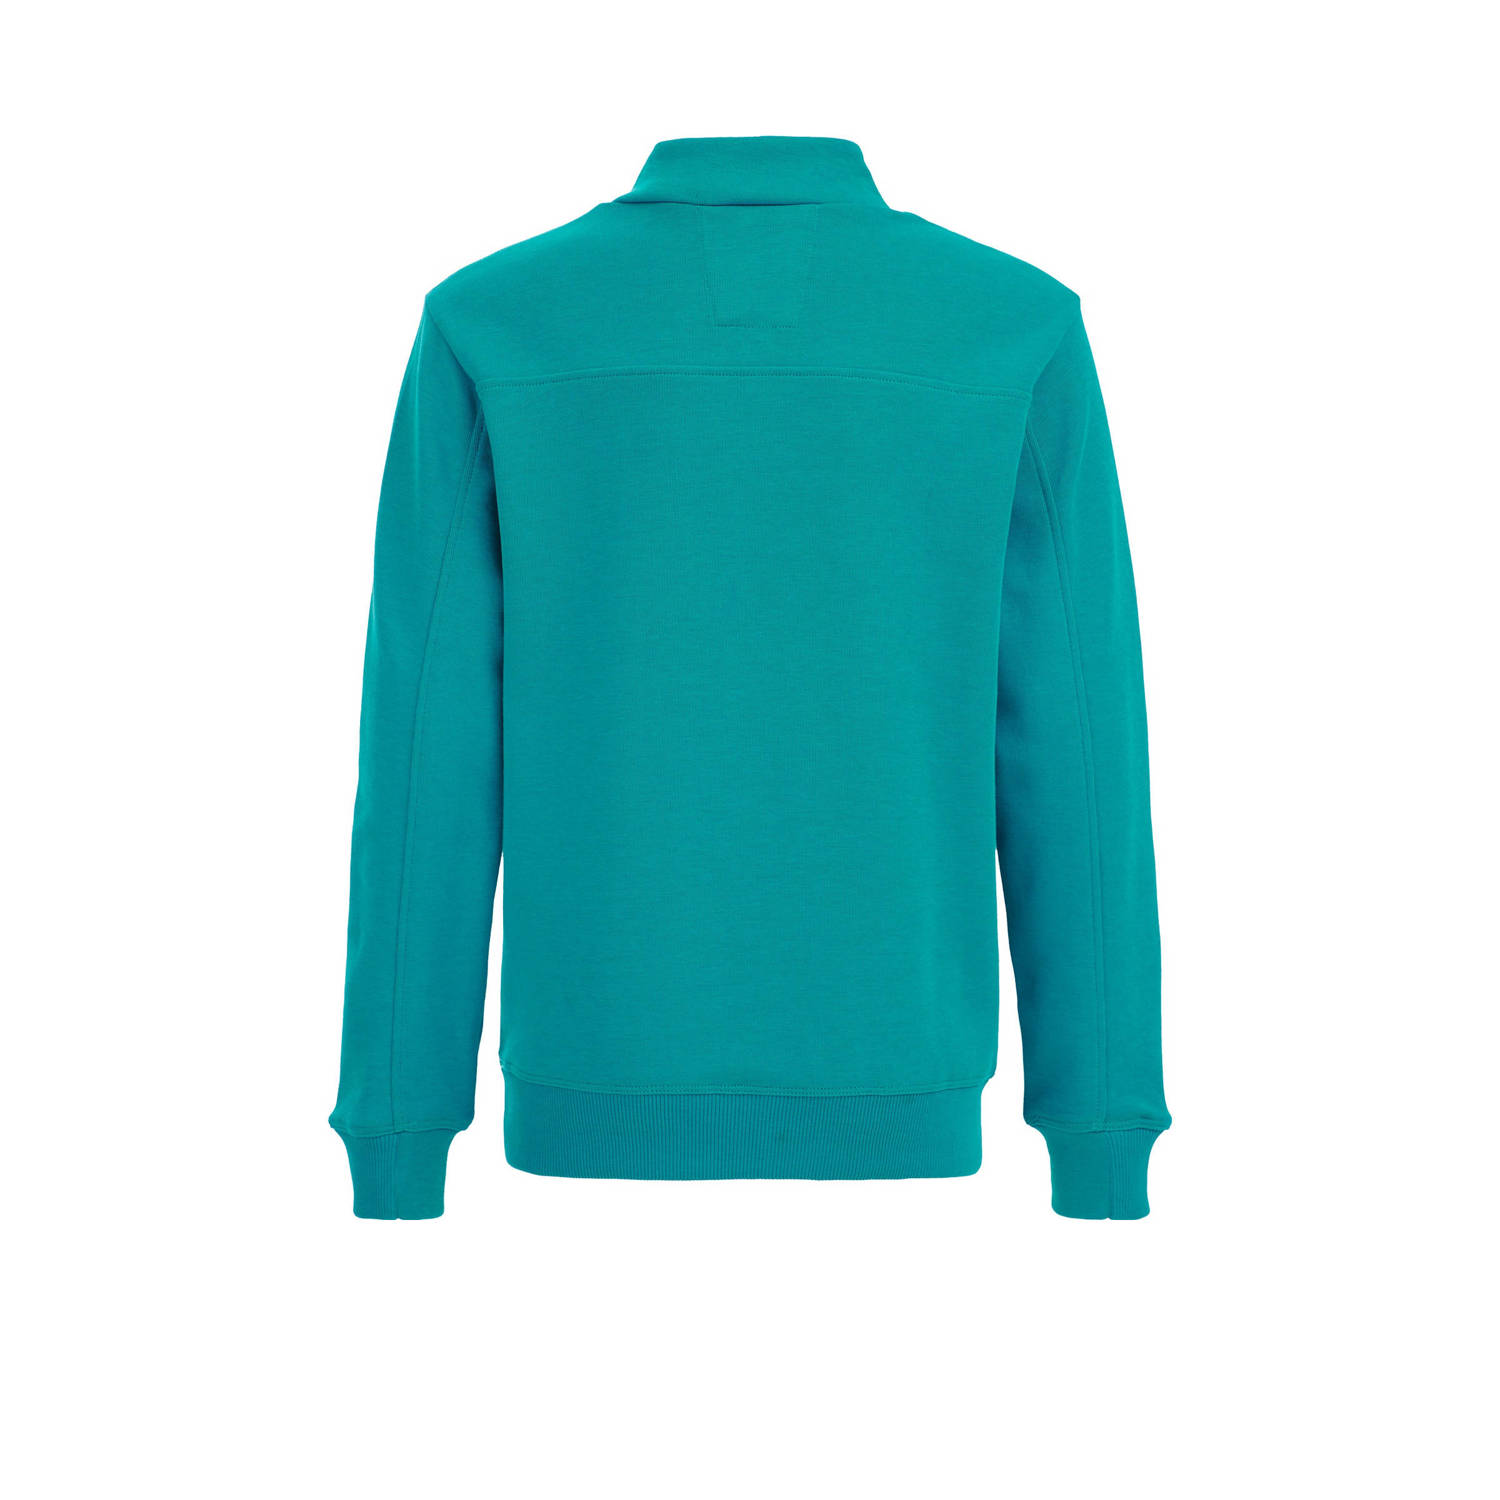 WE Fashion sweater met printopdruk blauwgroen